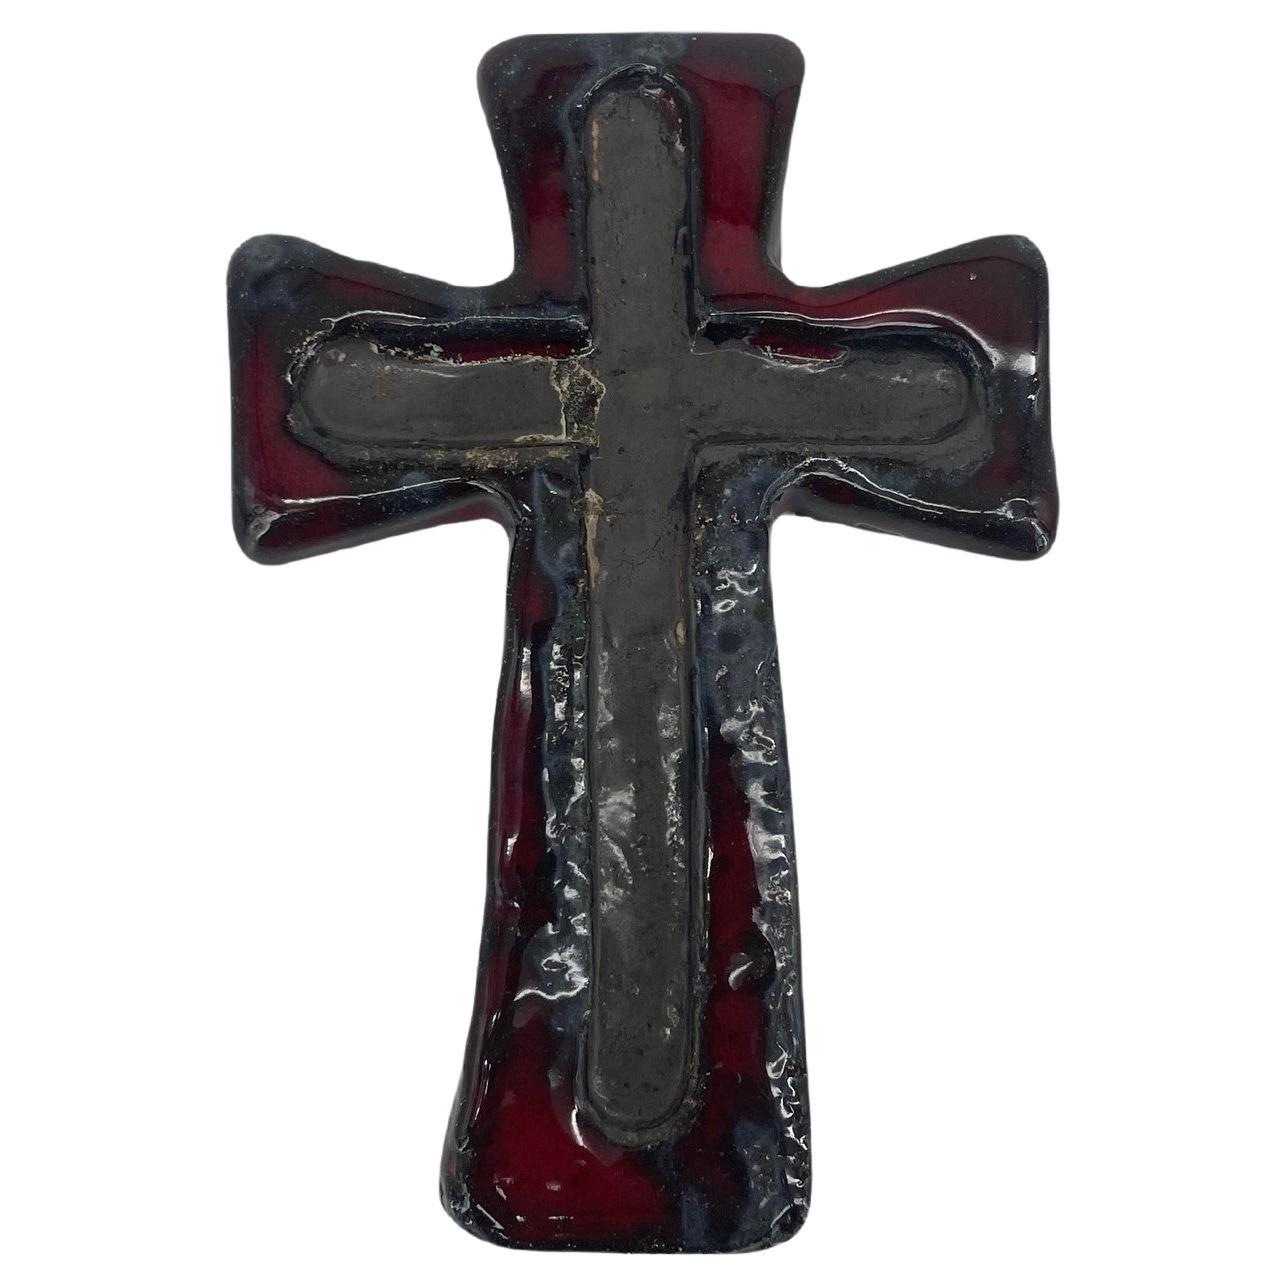 Crucifix in Rot, Schwarz und Grau, Wandbehang, Keramikkreuz Fat Lava, 1970er Jahre